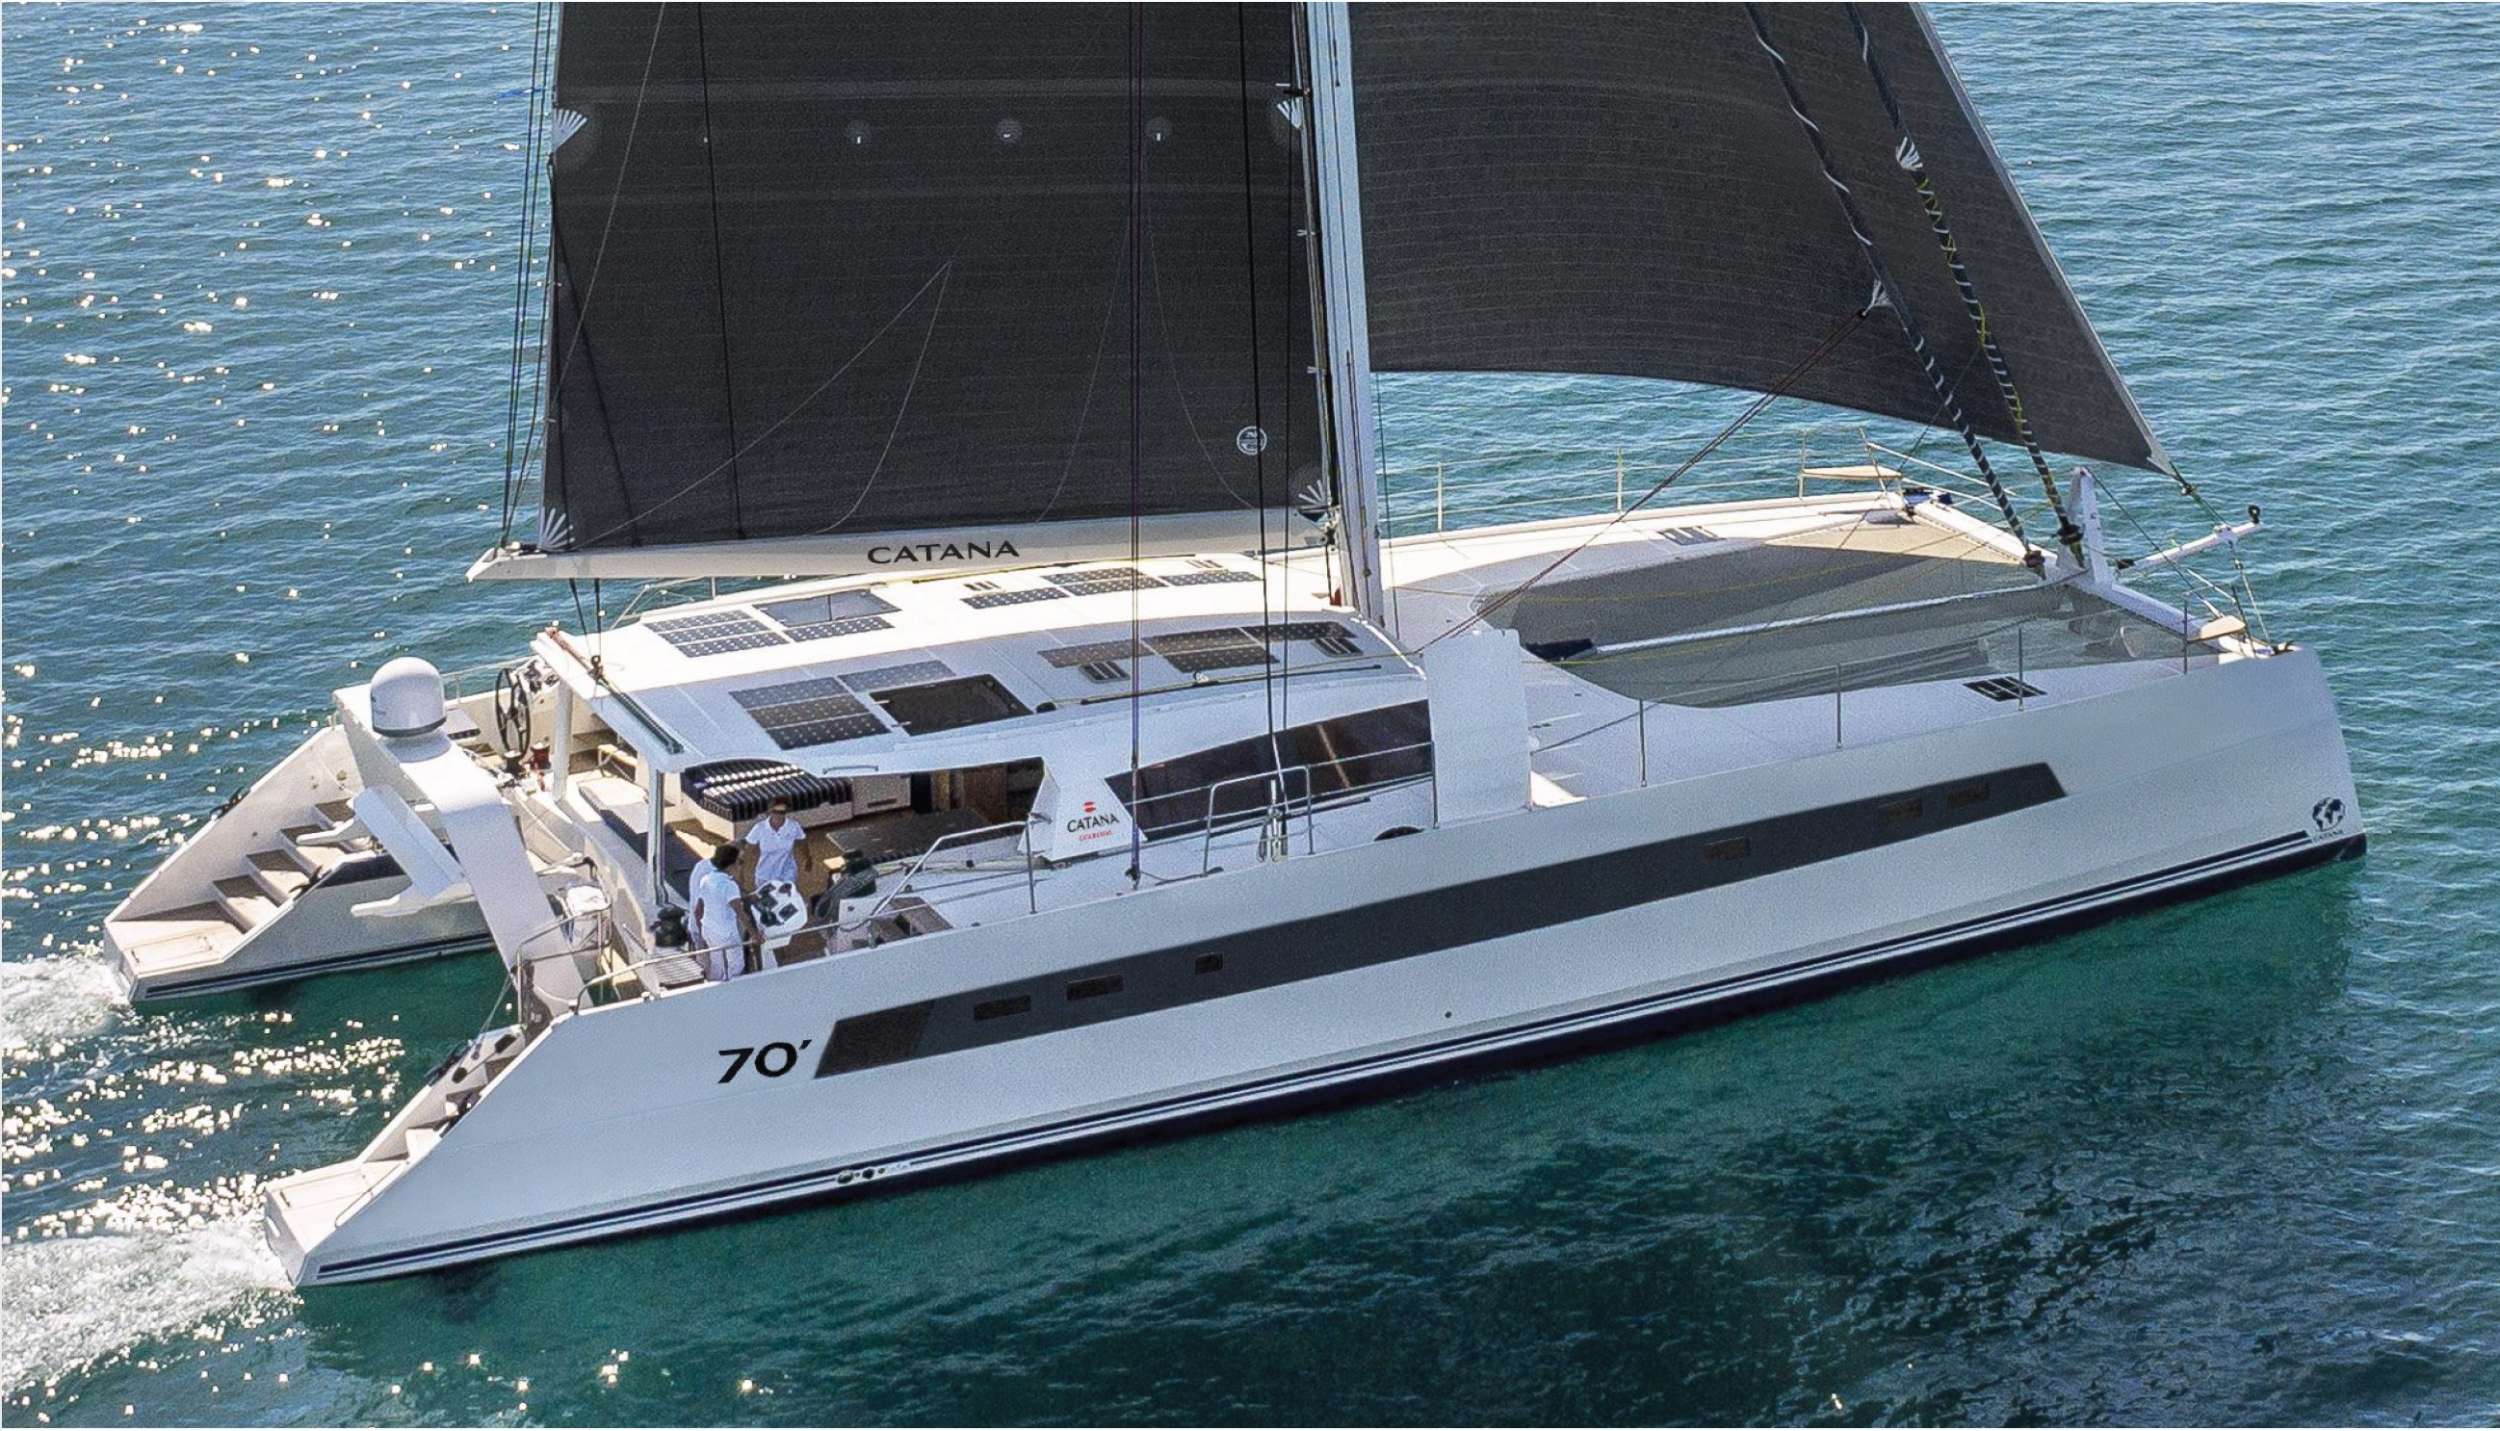 NEPTUNE - Yacht Charter Monaco & Boat hire in Fr. Riviera & Tyrrhenian Sea 1